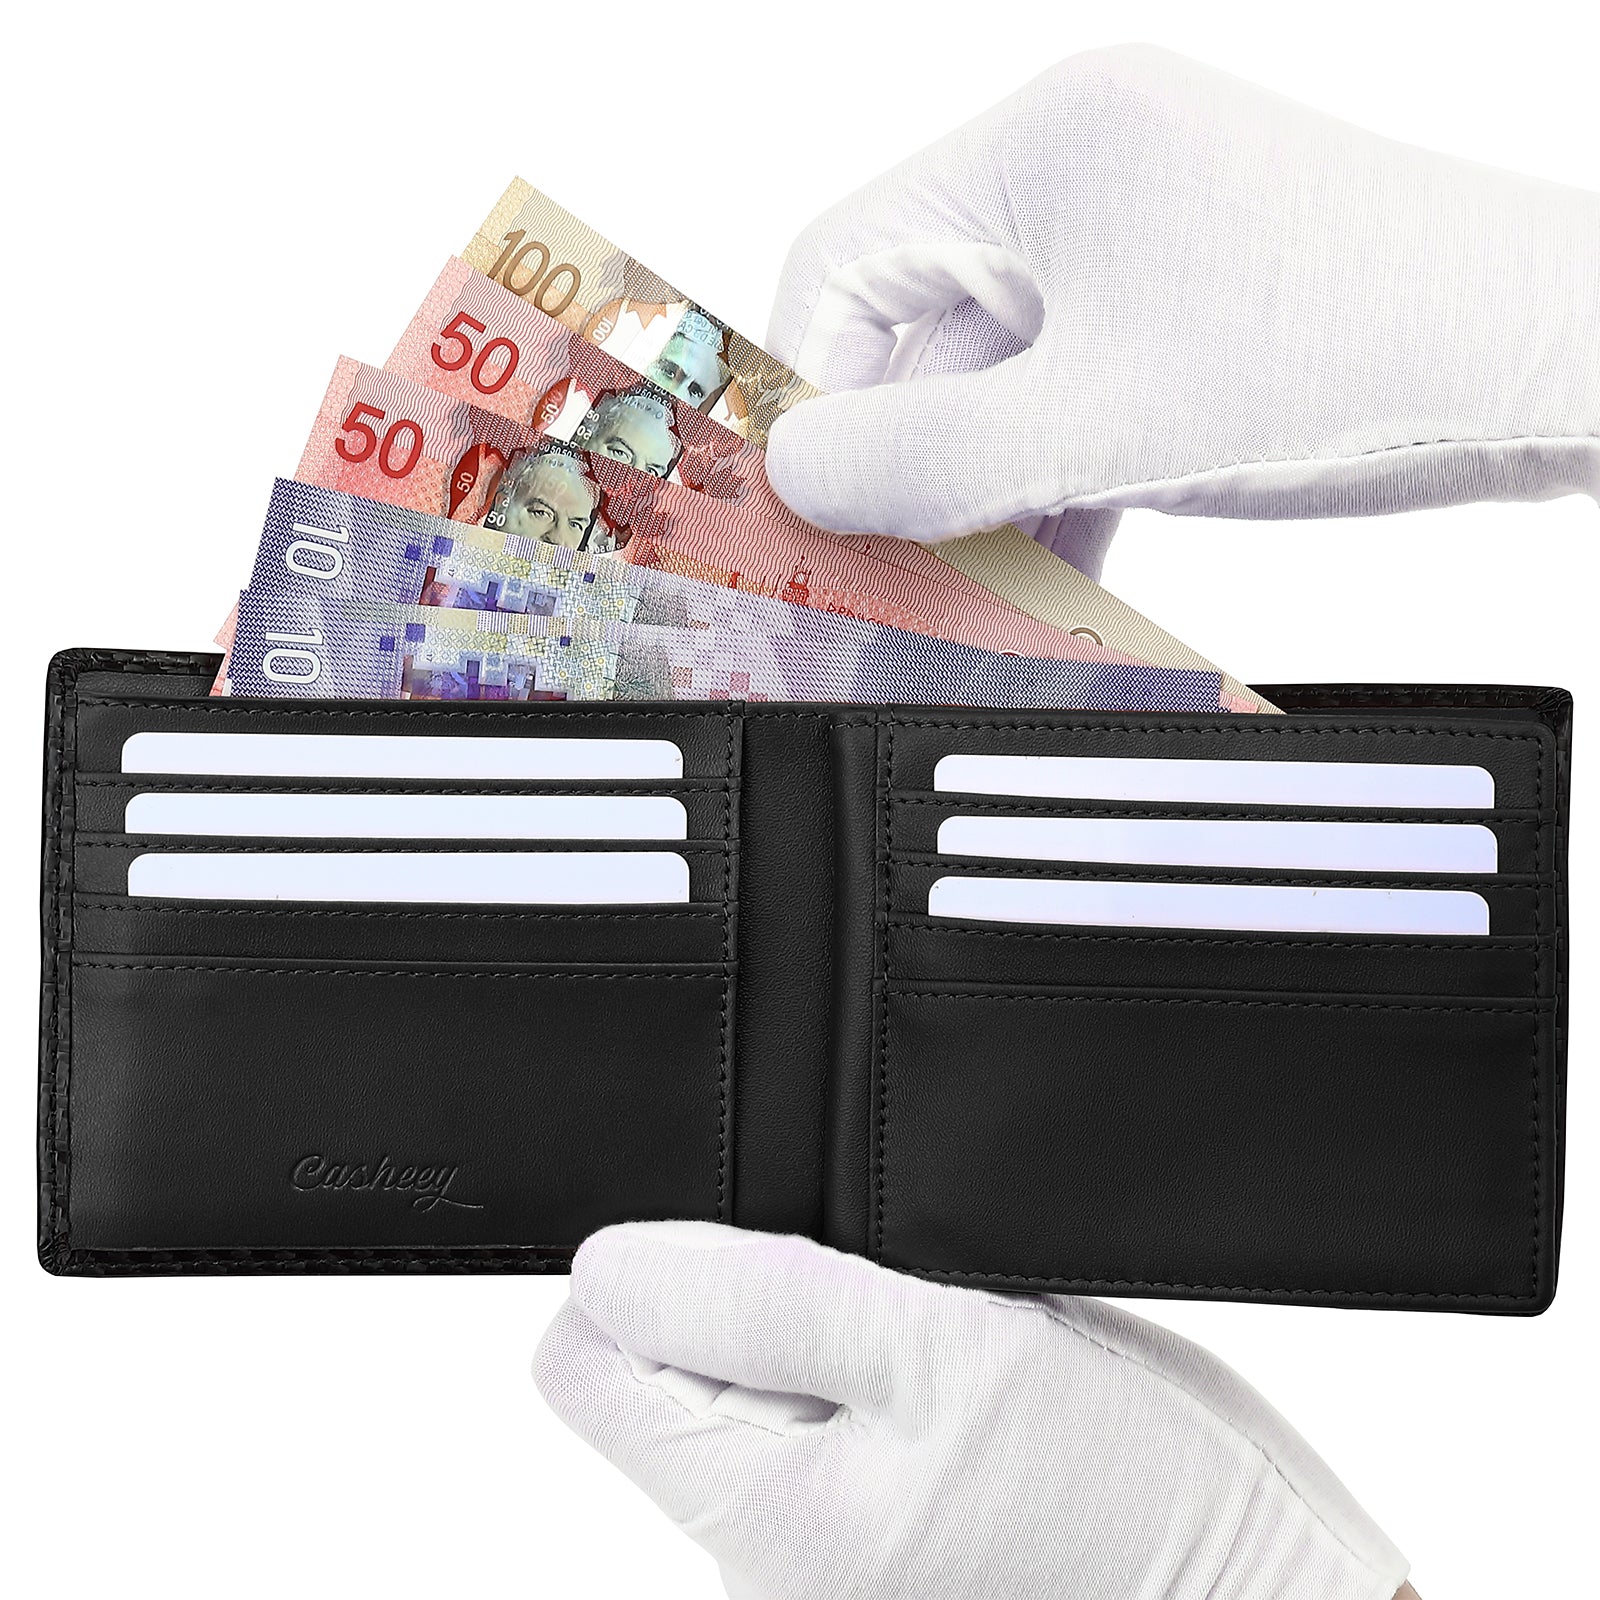 Coin Pocket Rfid Credit Card Holder, Men Wallet Carbon Leather